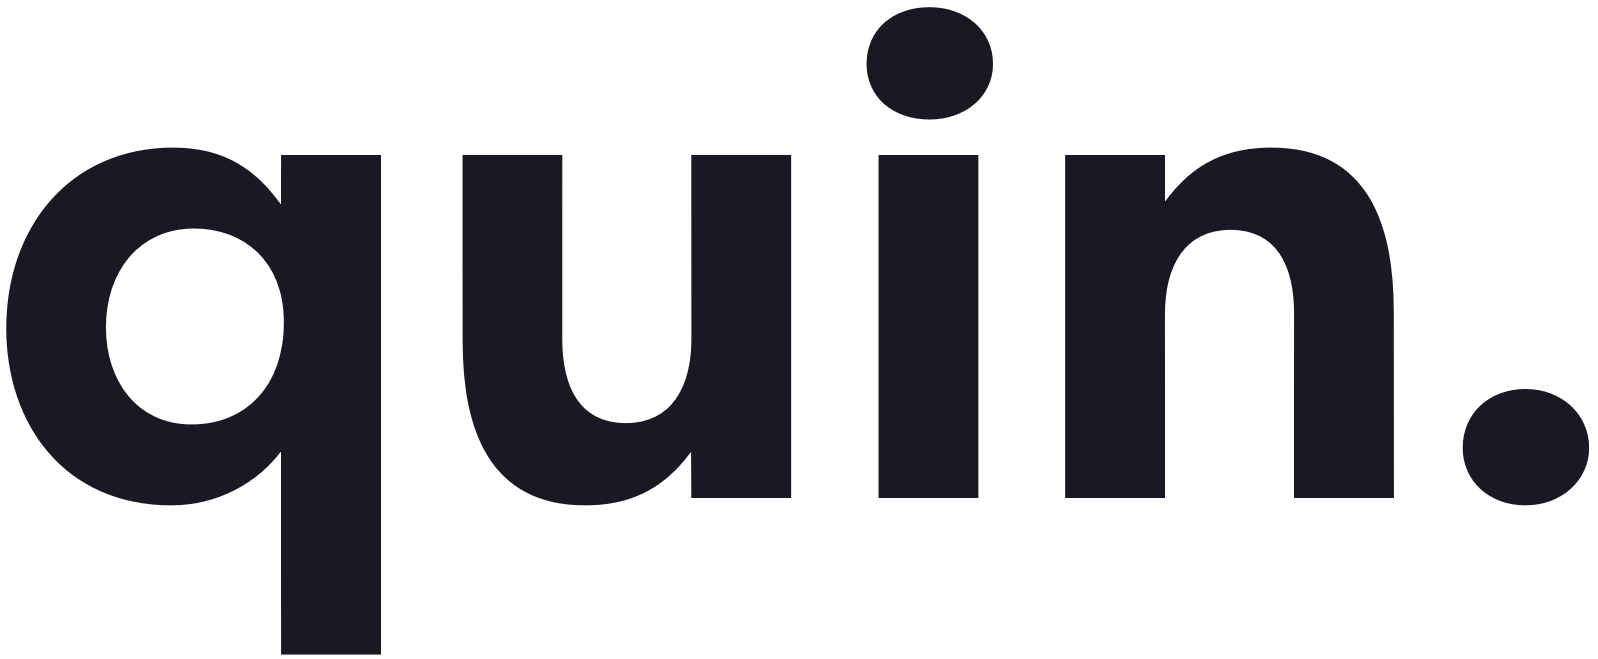 Quin van Vegchel | Logo